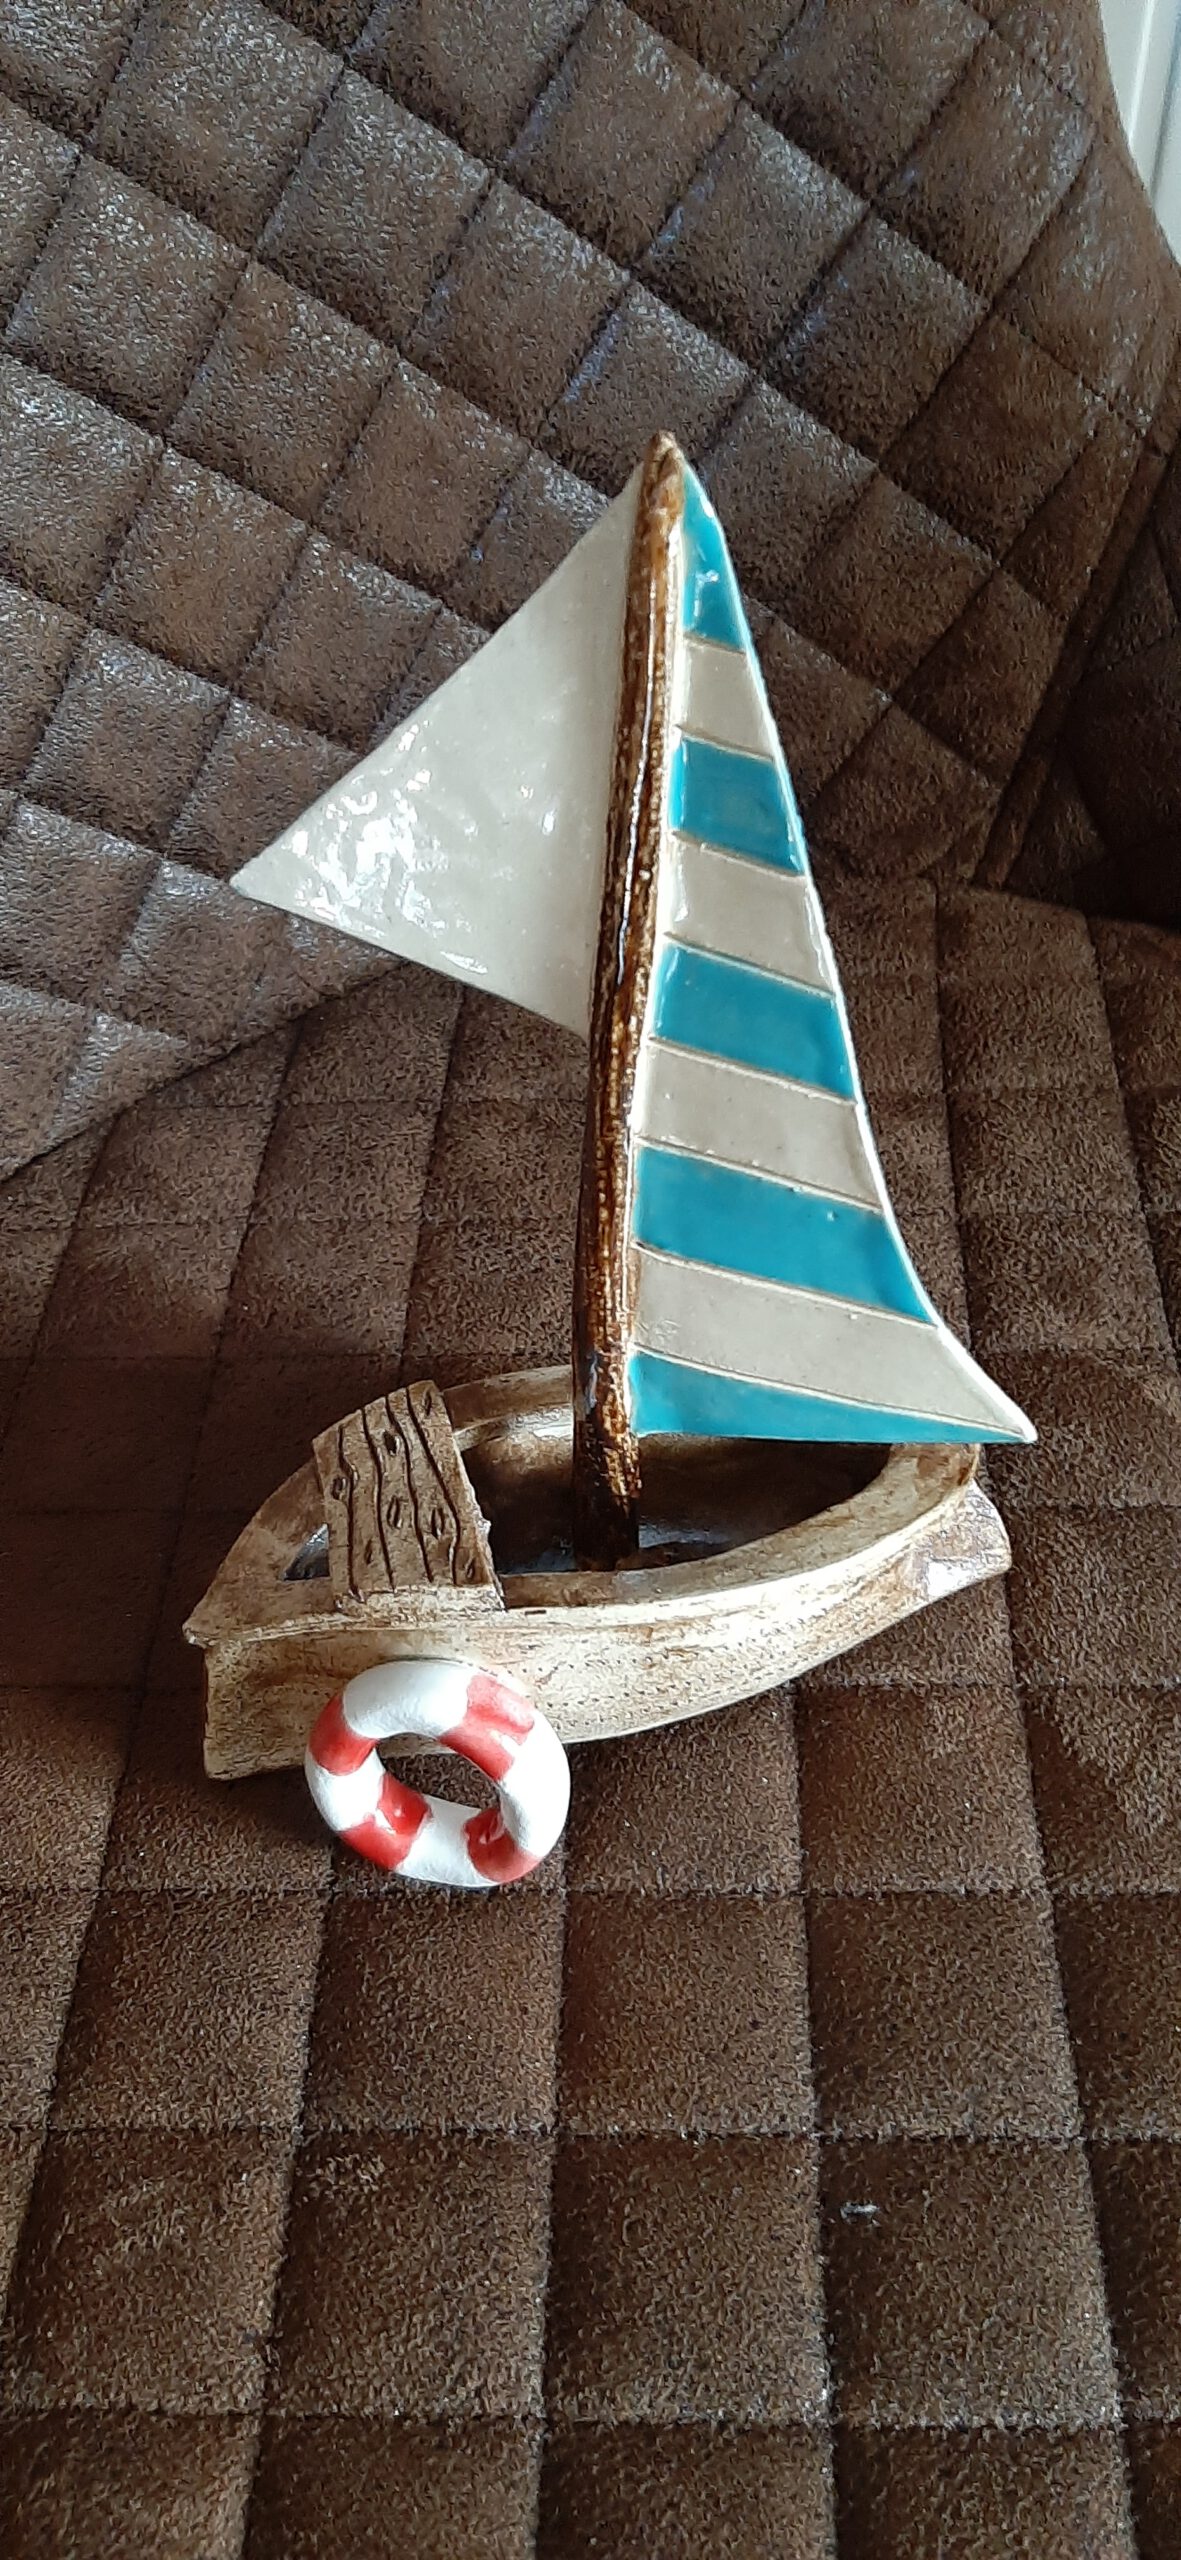 Segelschiff, Handarbeit, Keramikschiff, KeraMik von Herz zu Herz, Augsburg, Clay Artist